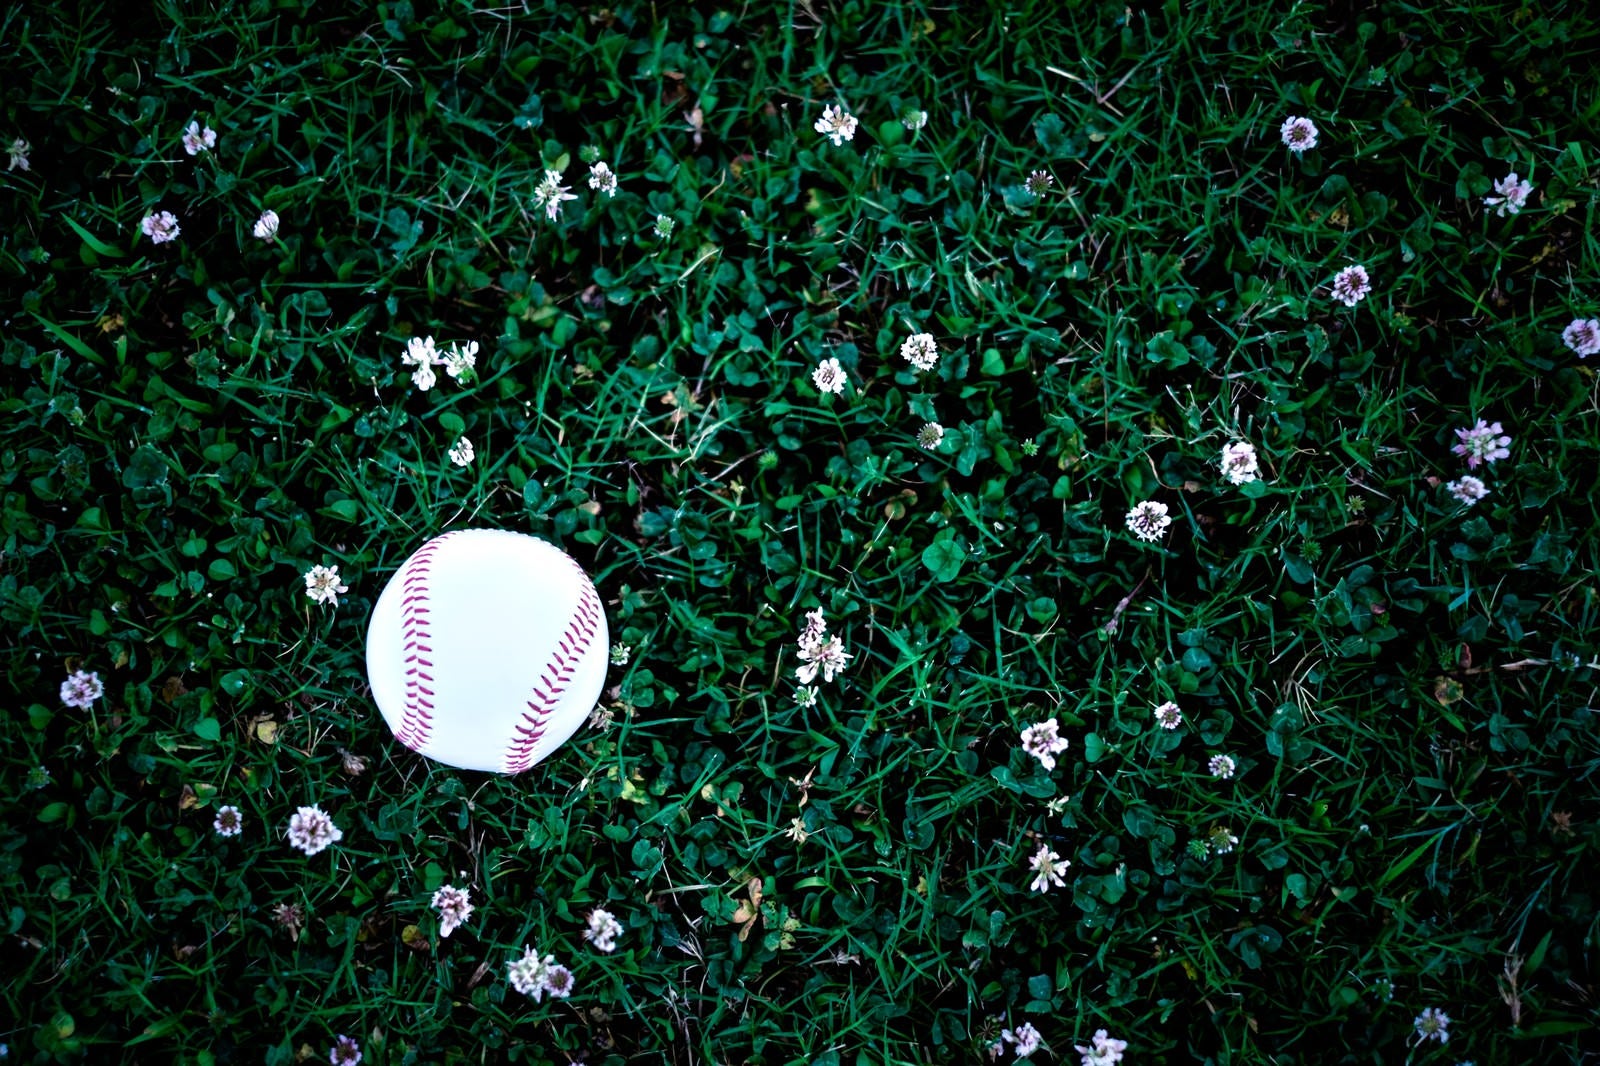 「片付け忘れた野球のボール」の写真